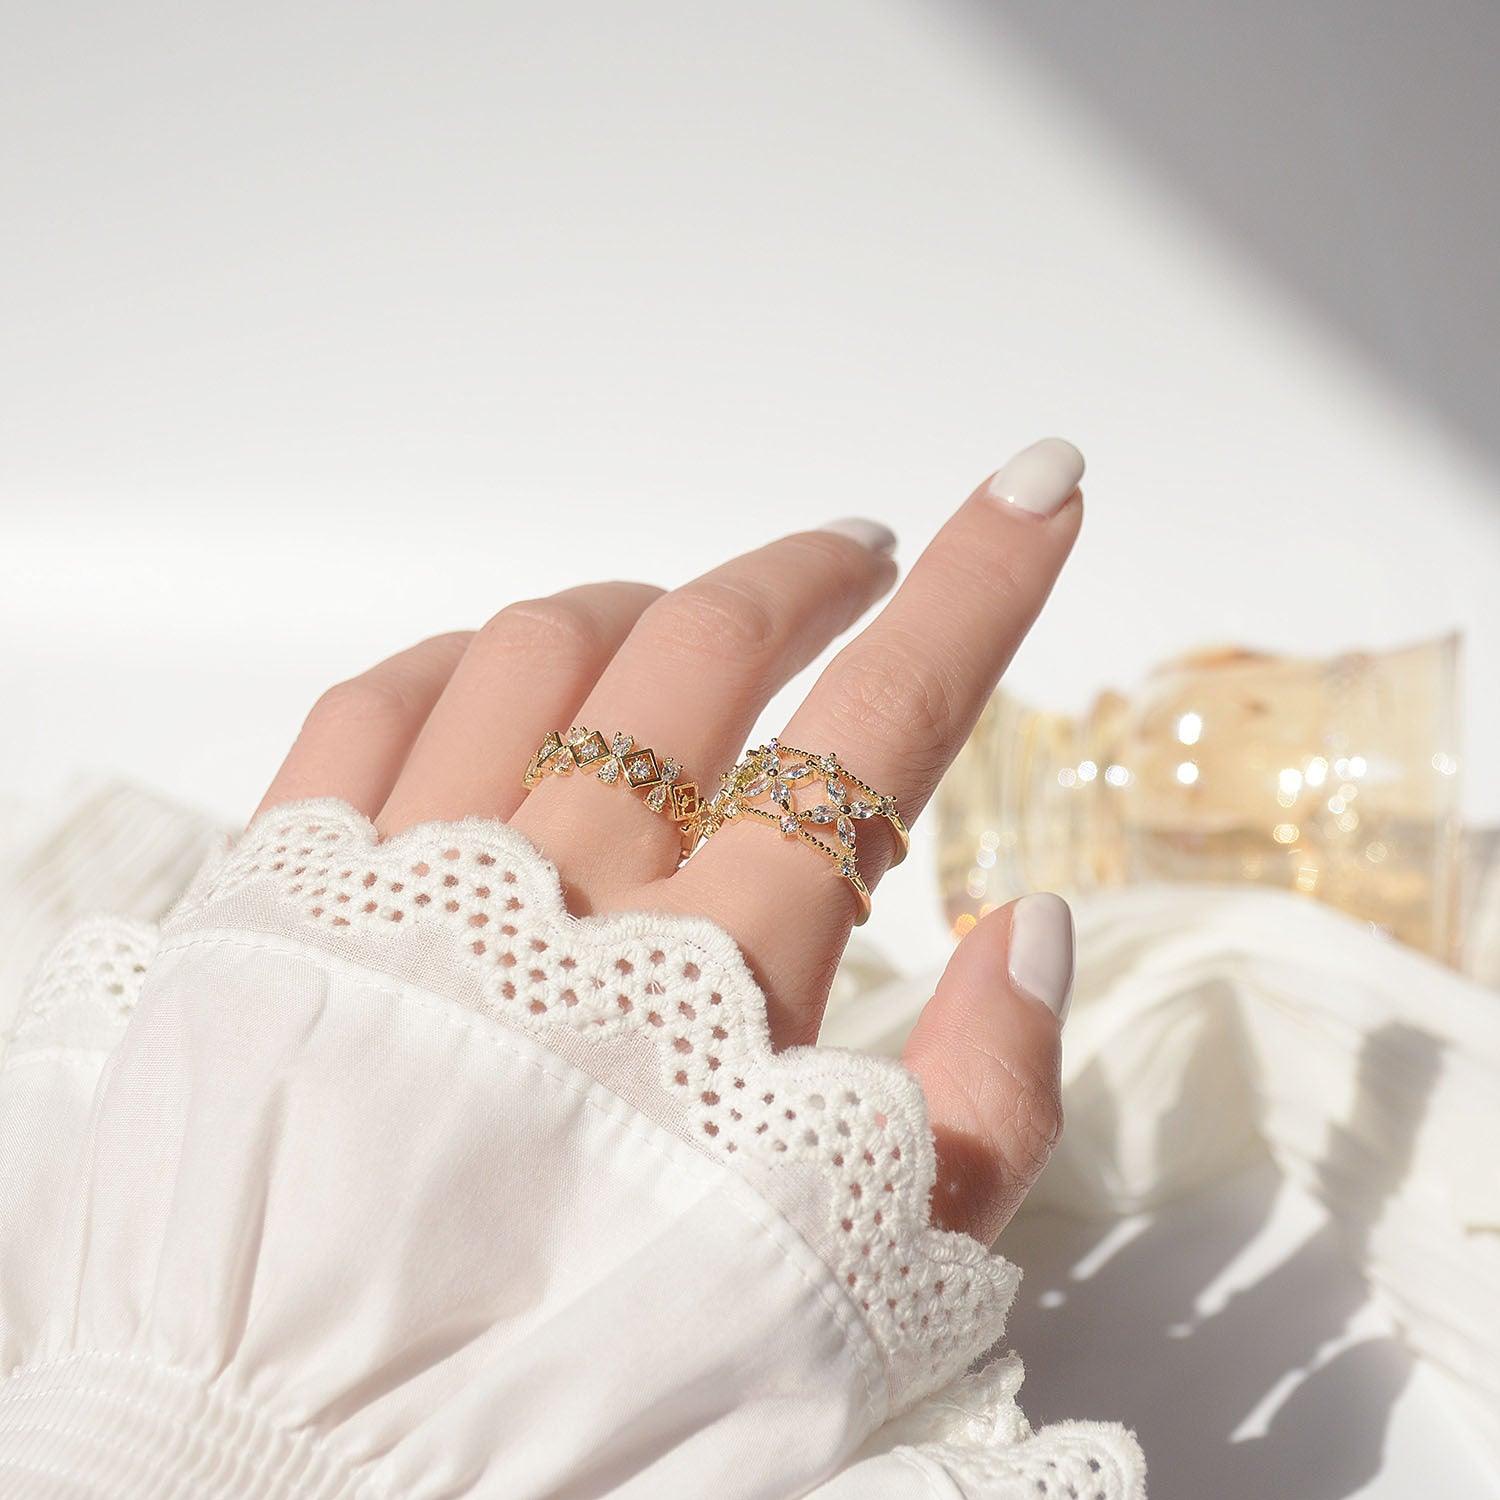 Baroque Ring - Teresa (2 Styles) - Gold - Plated - Abbott Atelier